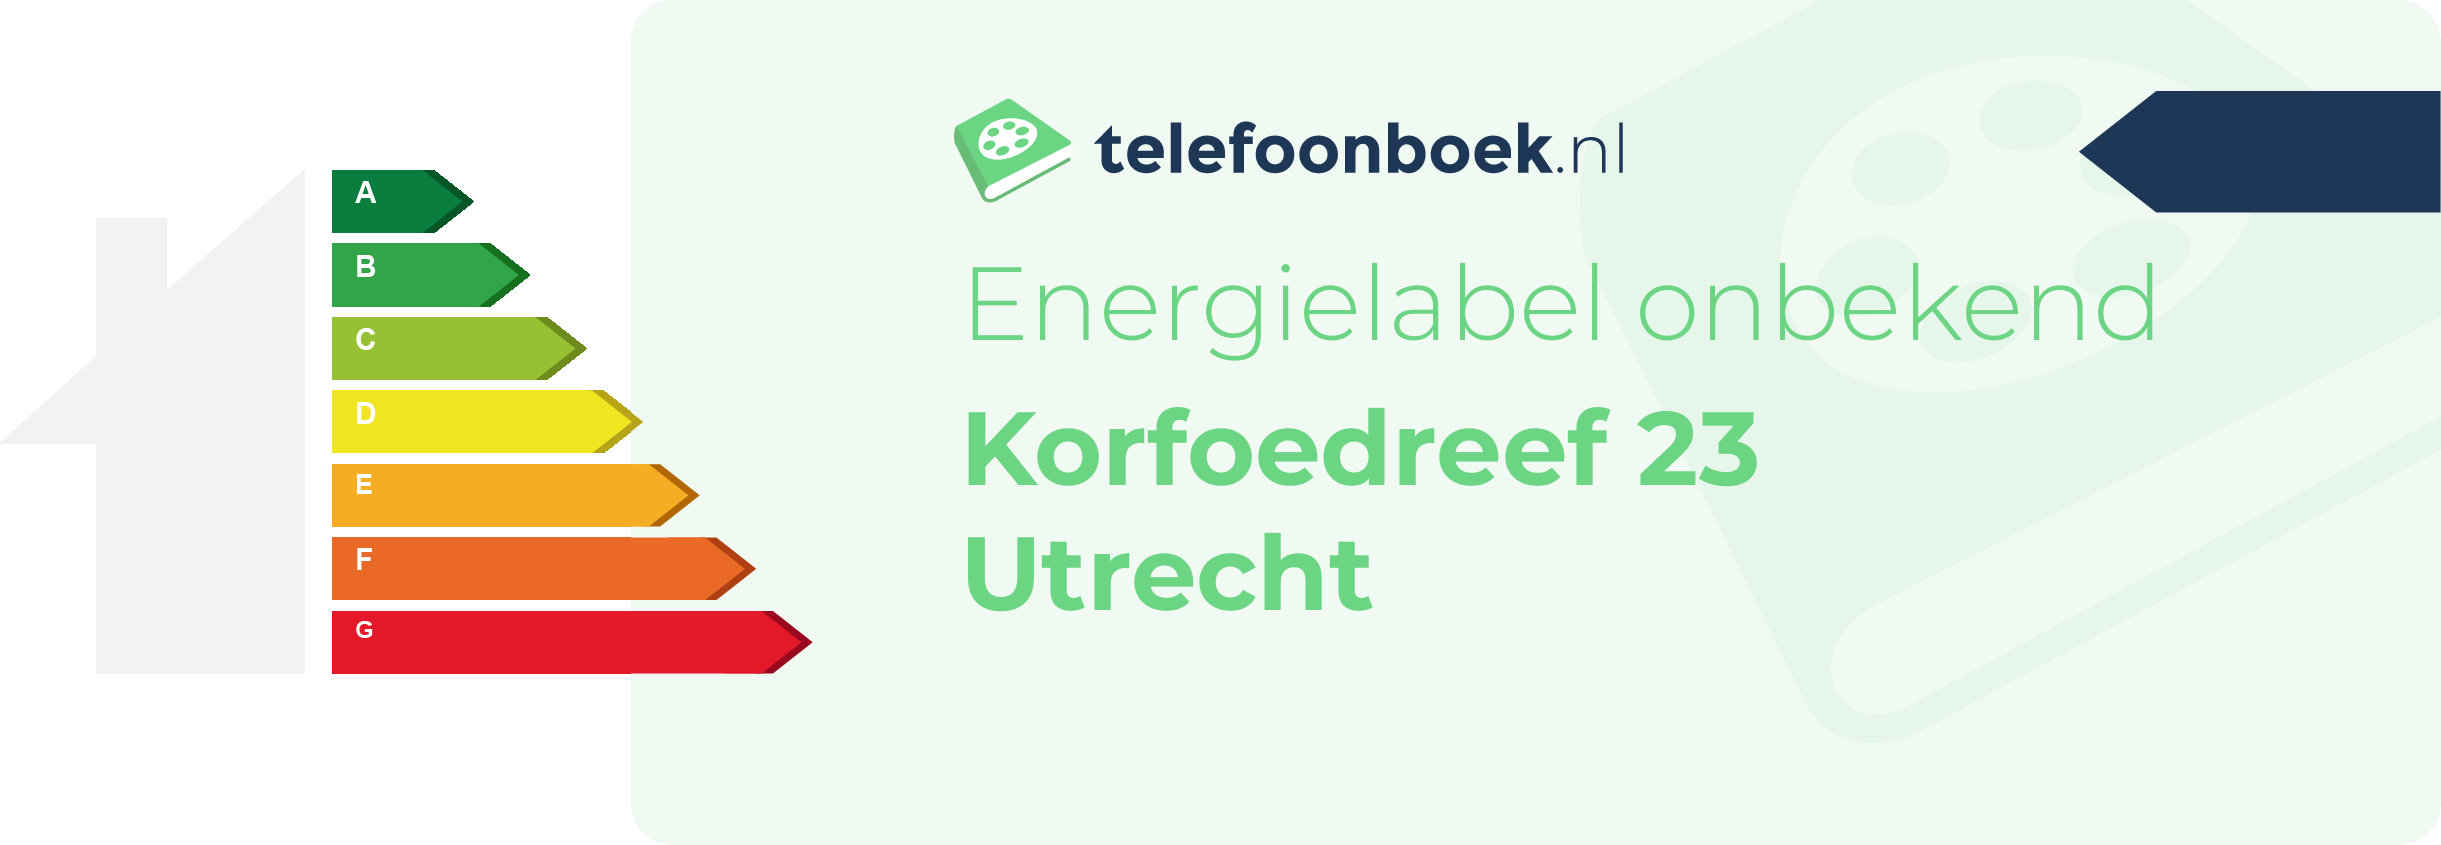 Energielabel Korfoedreef 23 Utrecht